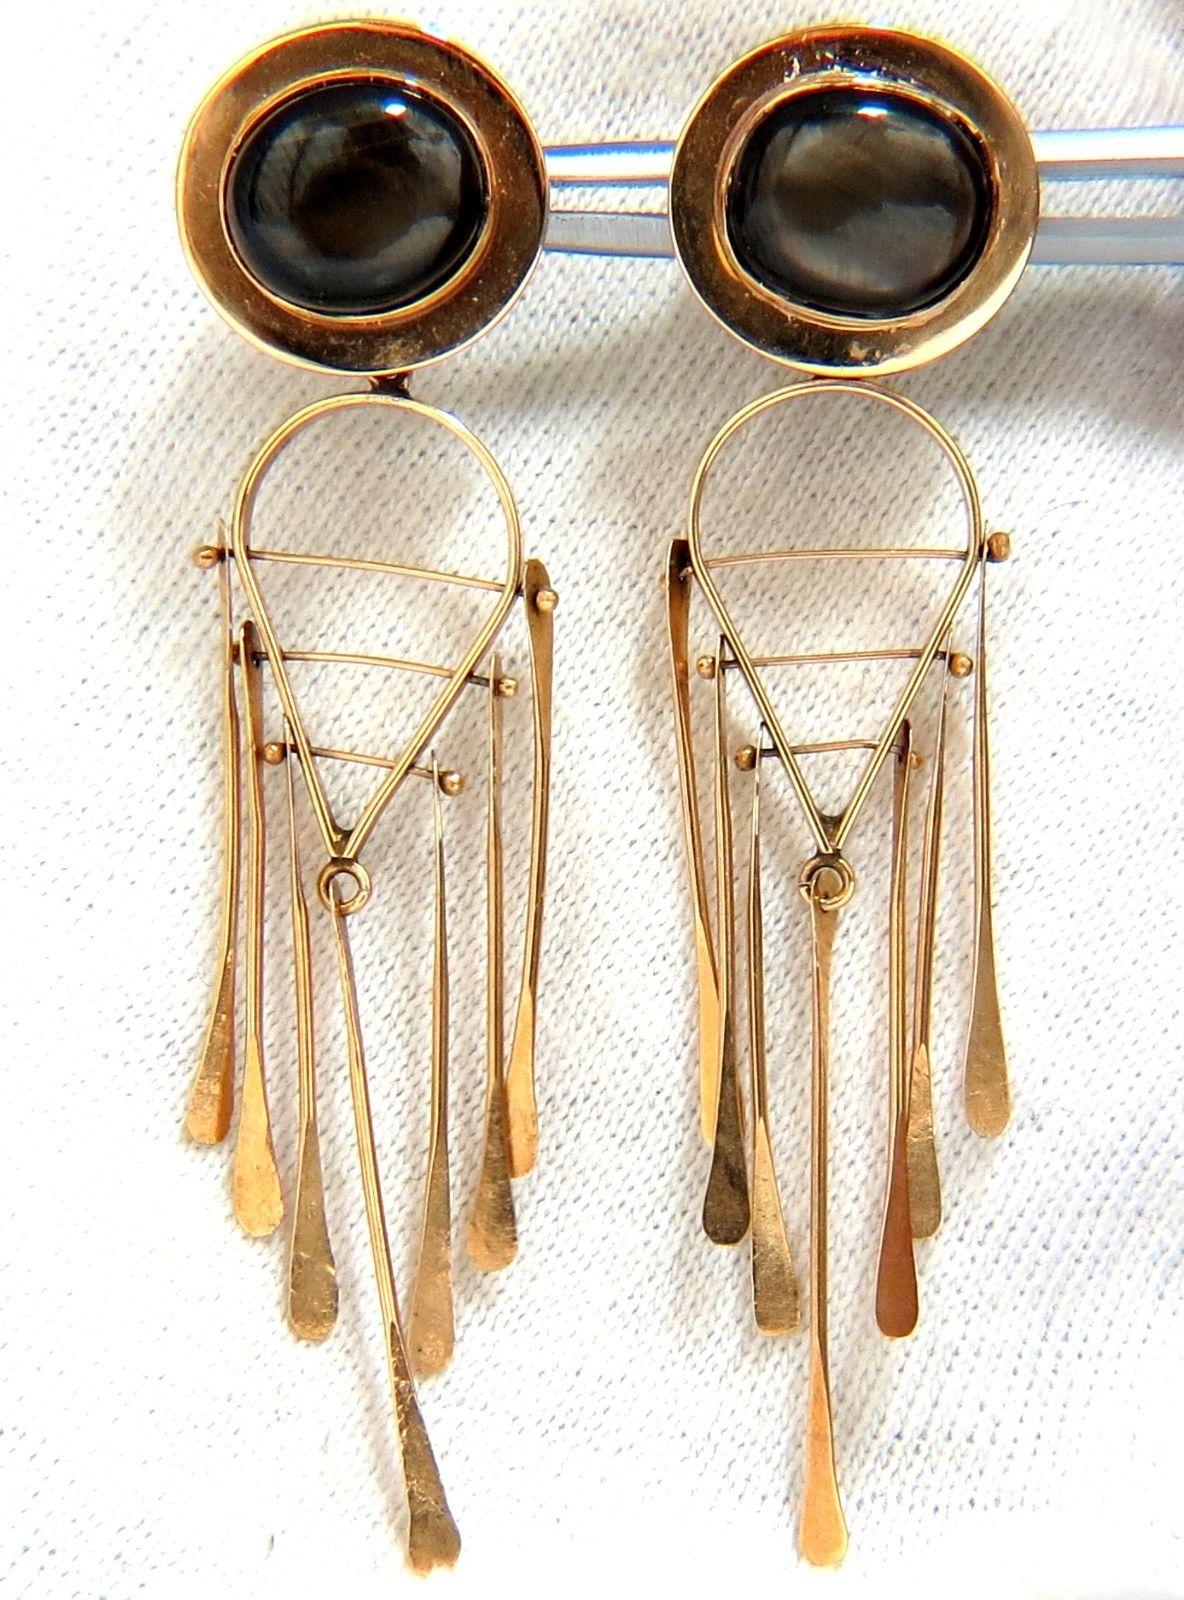 Modernist Art Deco Style Black Star Symbolic Dangle Earrings 14 Karat Dream Catcher